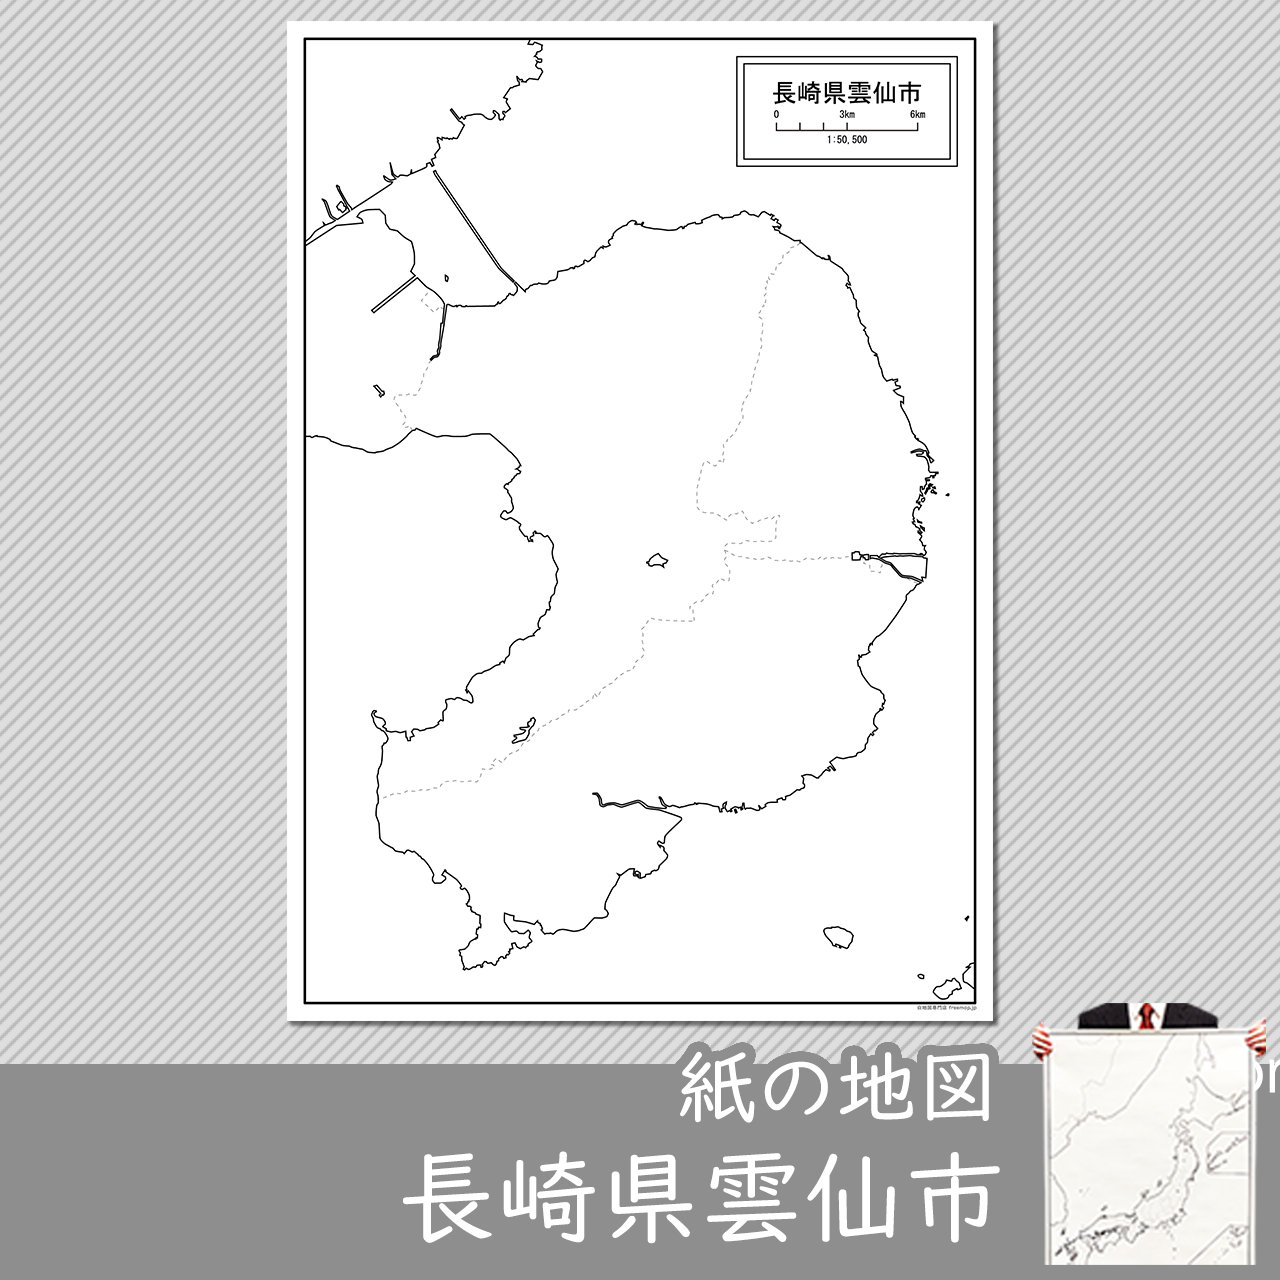 雲仙市の紙の白地図のサムネイル